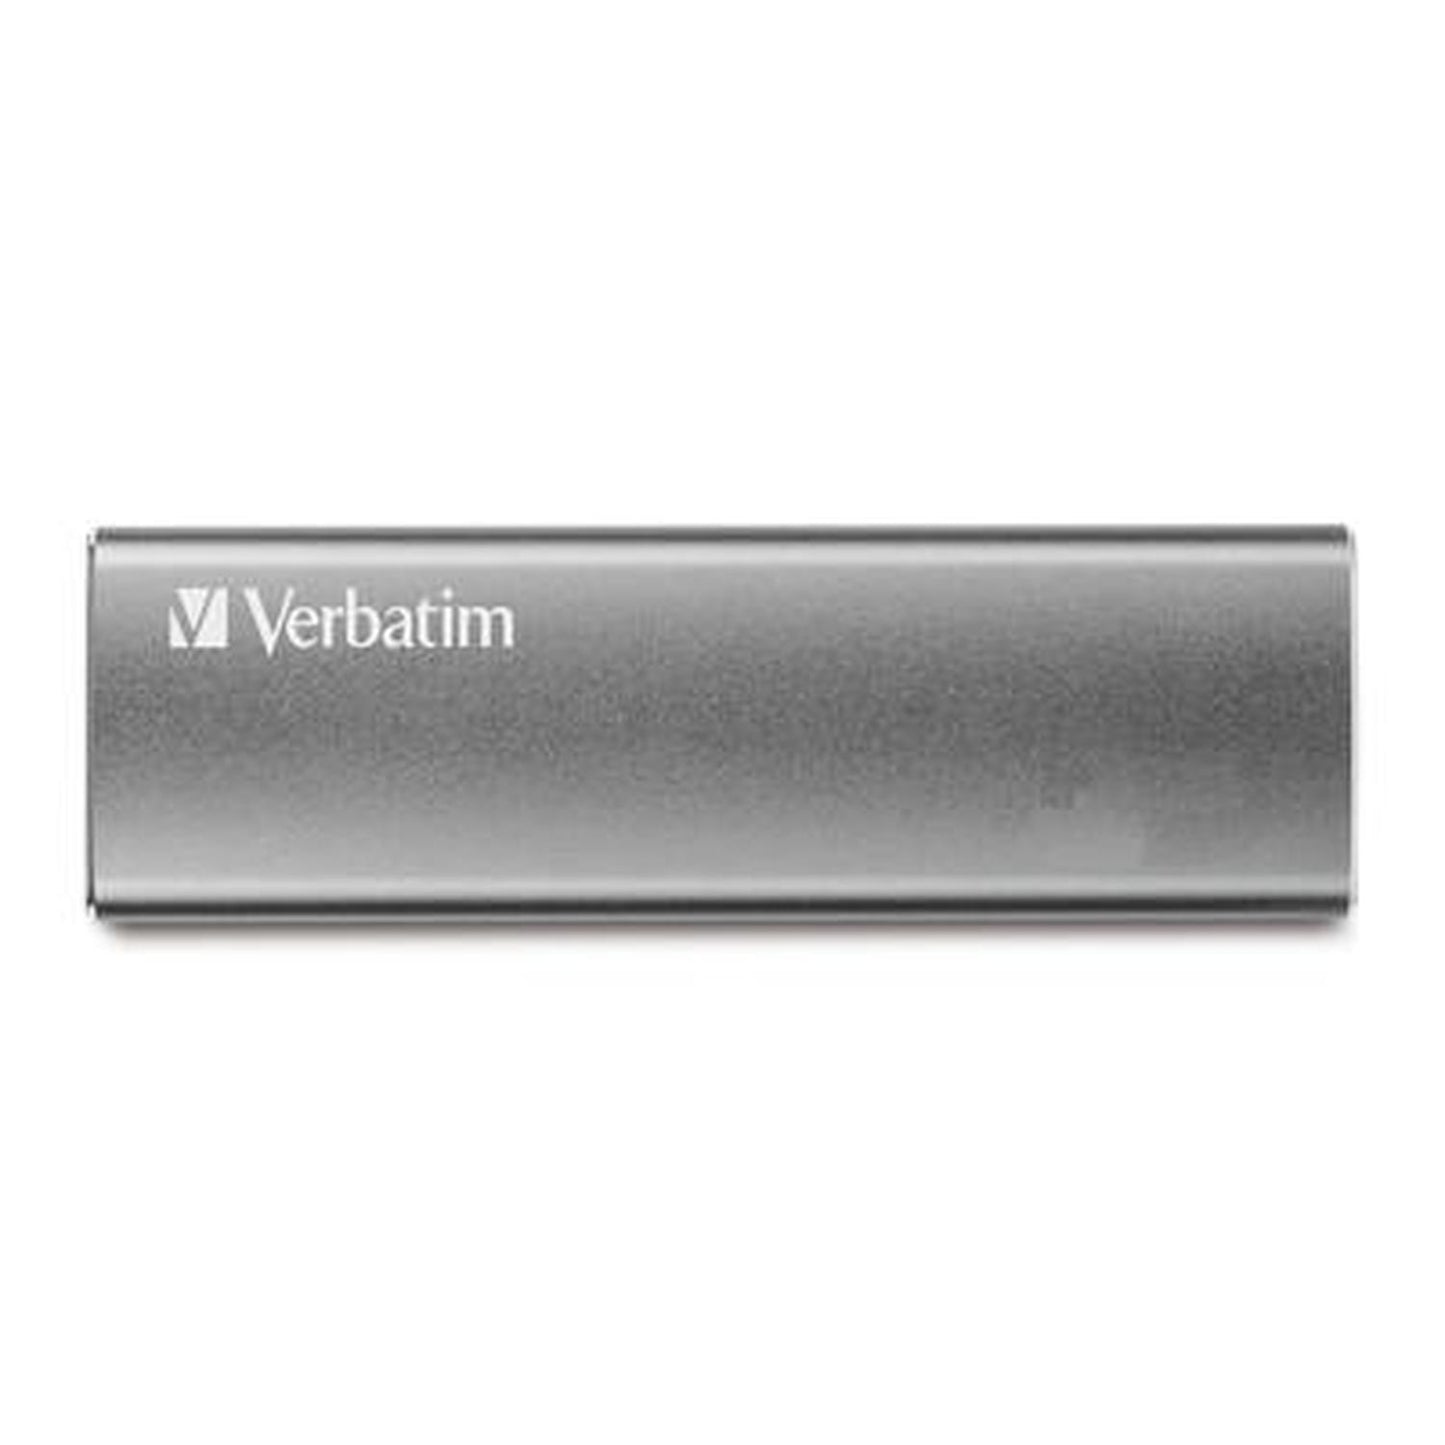 SSD externo Verbatim Vx500 de 240GB,USB3.1 color Grafito